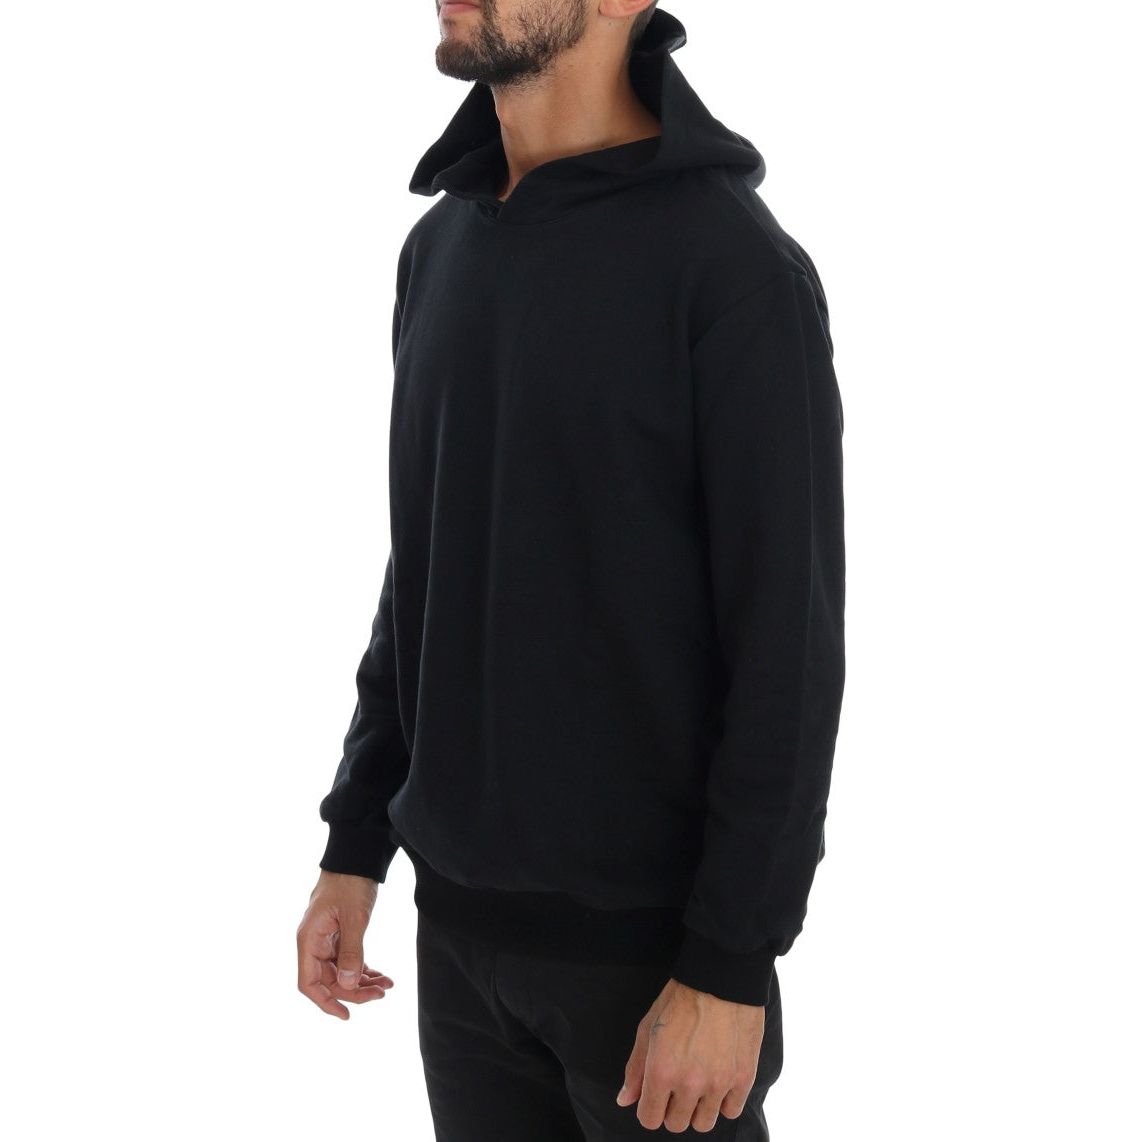 Daniele Alessandrini Elegant Black Cotton Hooded Sweater black-gym-casual-hooded-cotton-sweater 457508-black-gym-casual-hooded-cotton-sweater-1.jpg